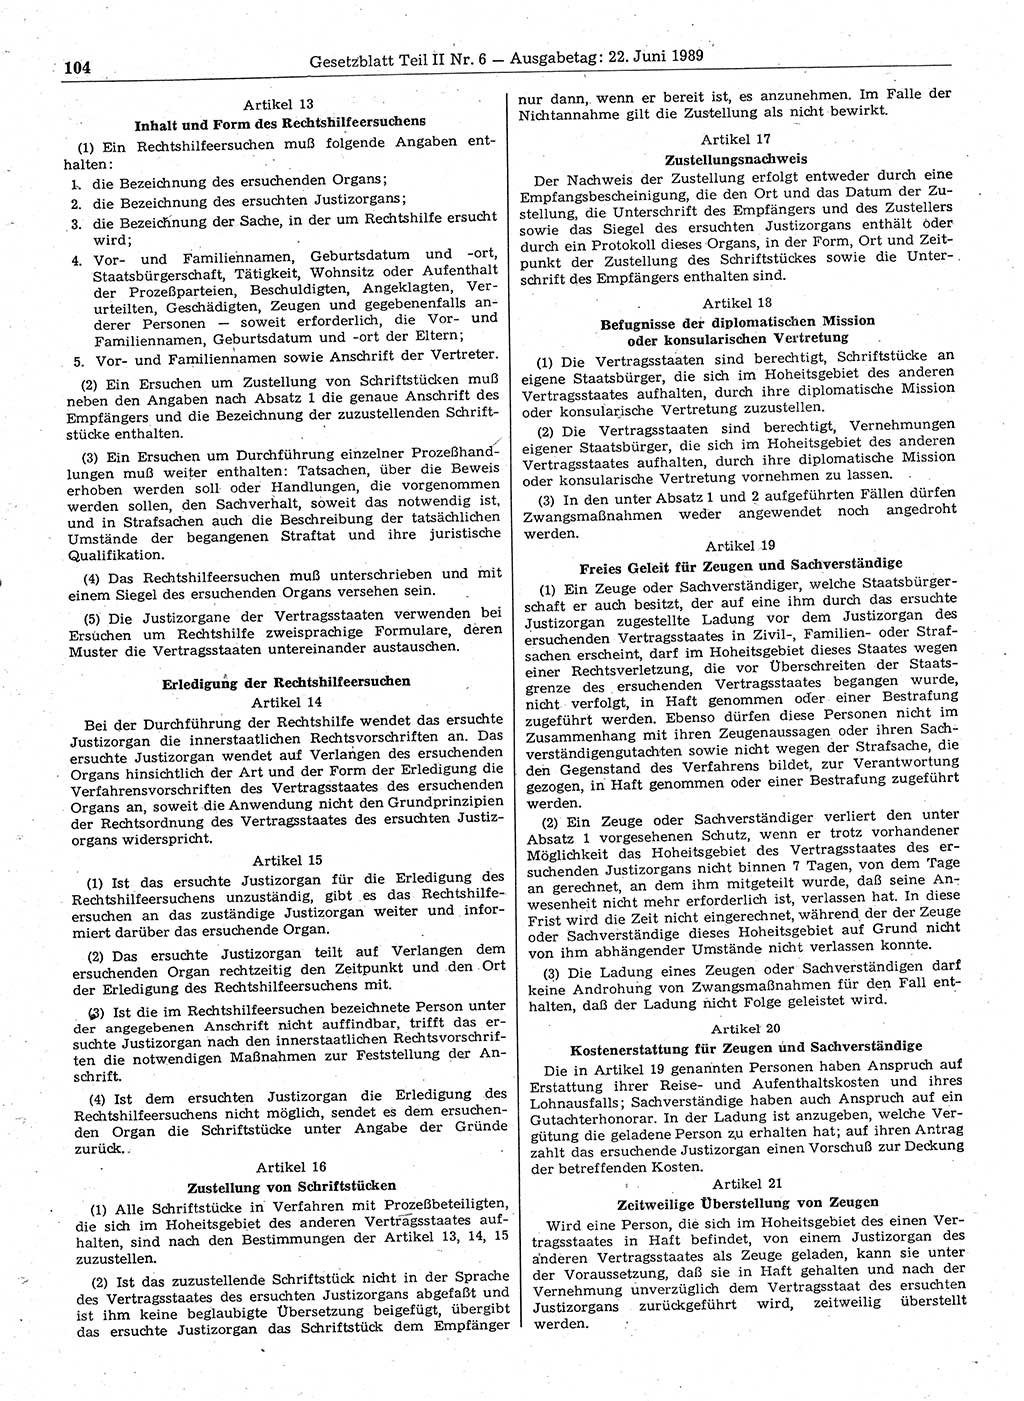 Gesetzblatt (GBl.) der Deutschen Demokratischen Republik (DDR) Teil ⅠⅠ 1989, Seite 104 (GBl. DDR ⅠⅠ 1989, S. 104)